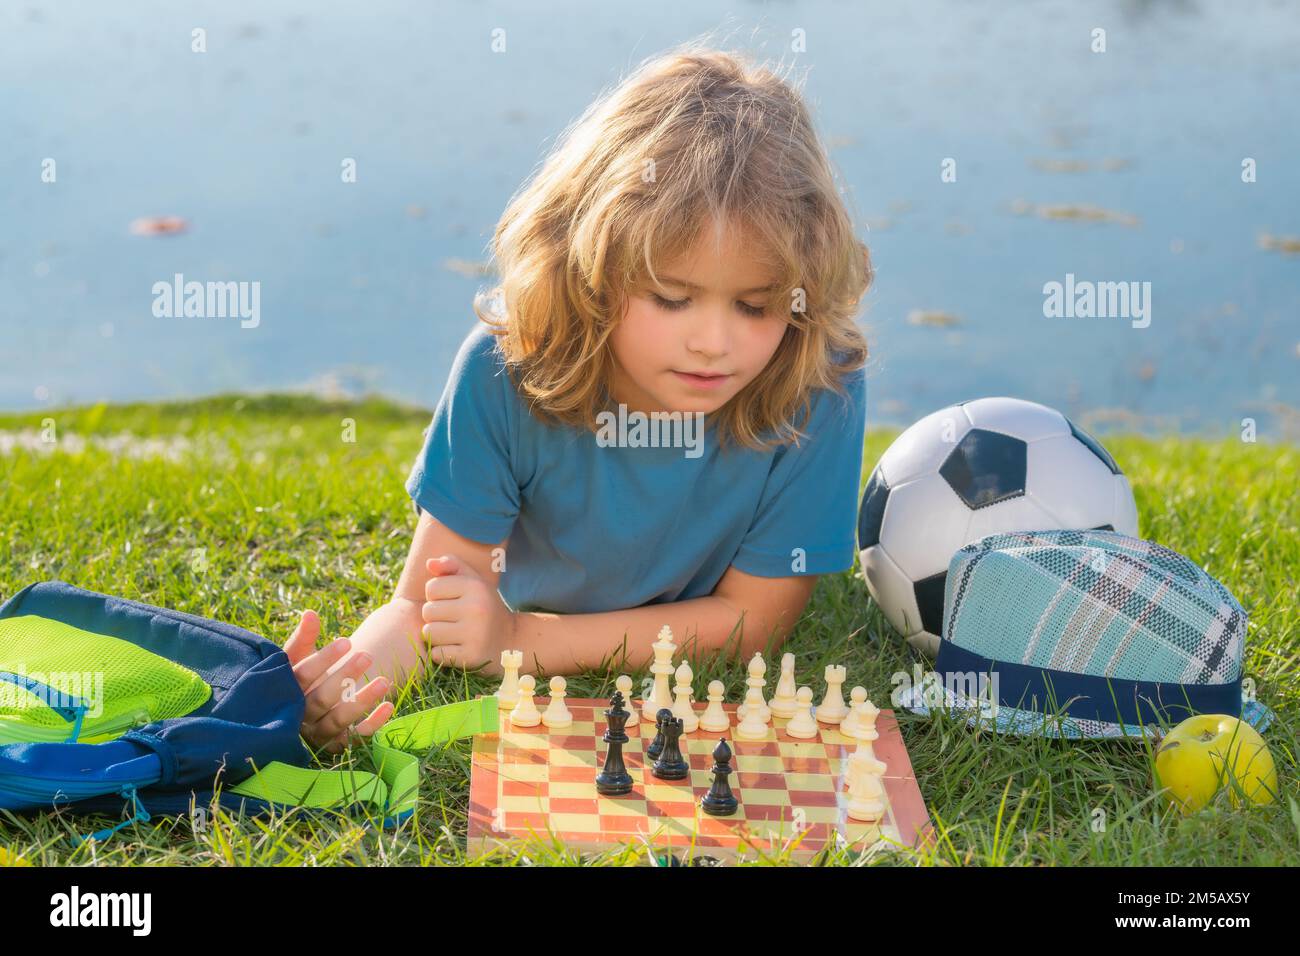 Kluger Junge, der Schach spielt. Kluges Kind, das an Schach denkt. Stockfoto